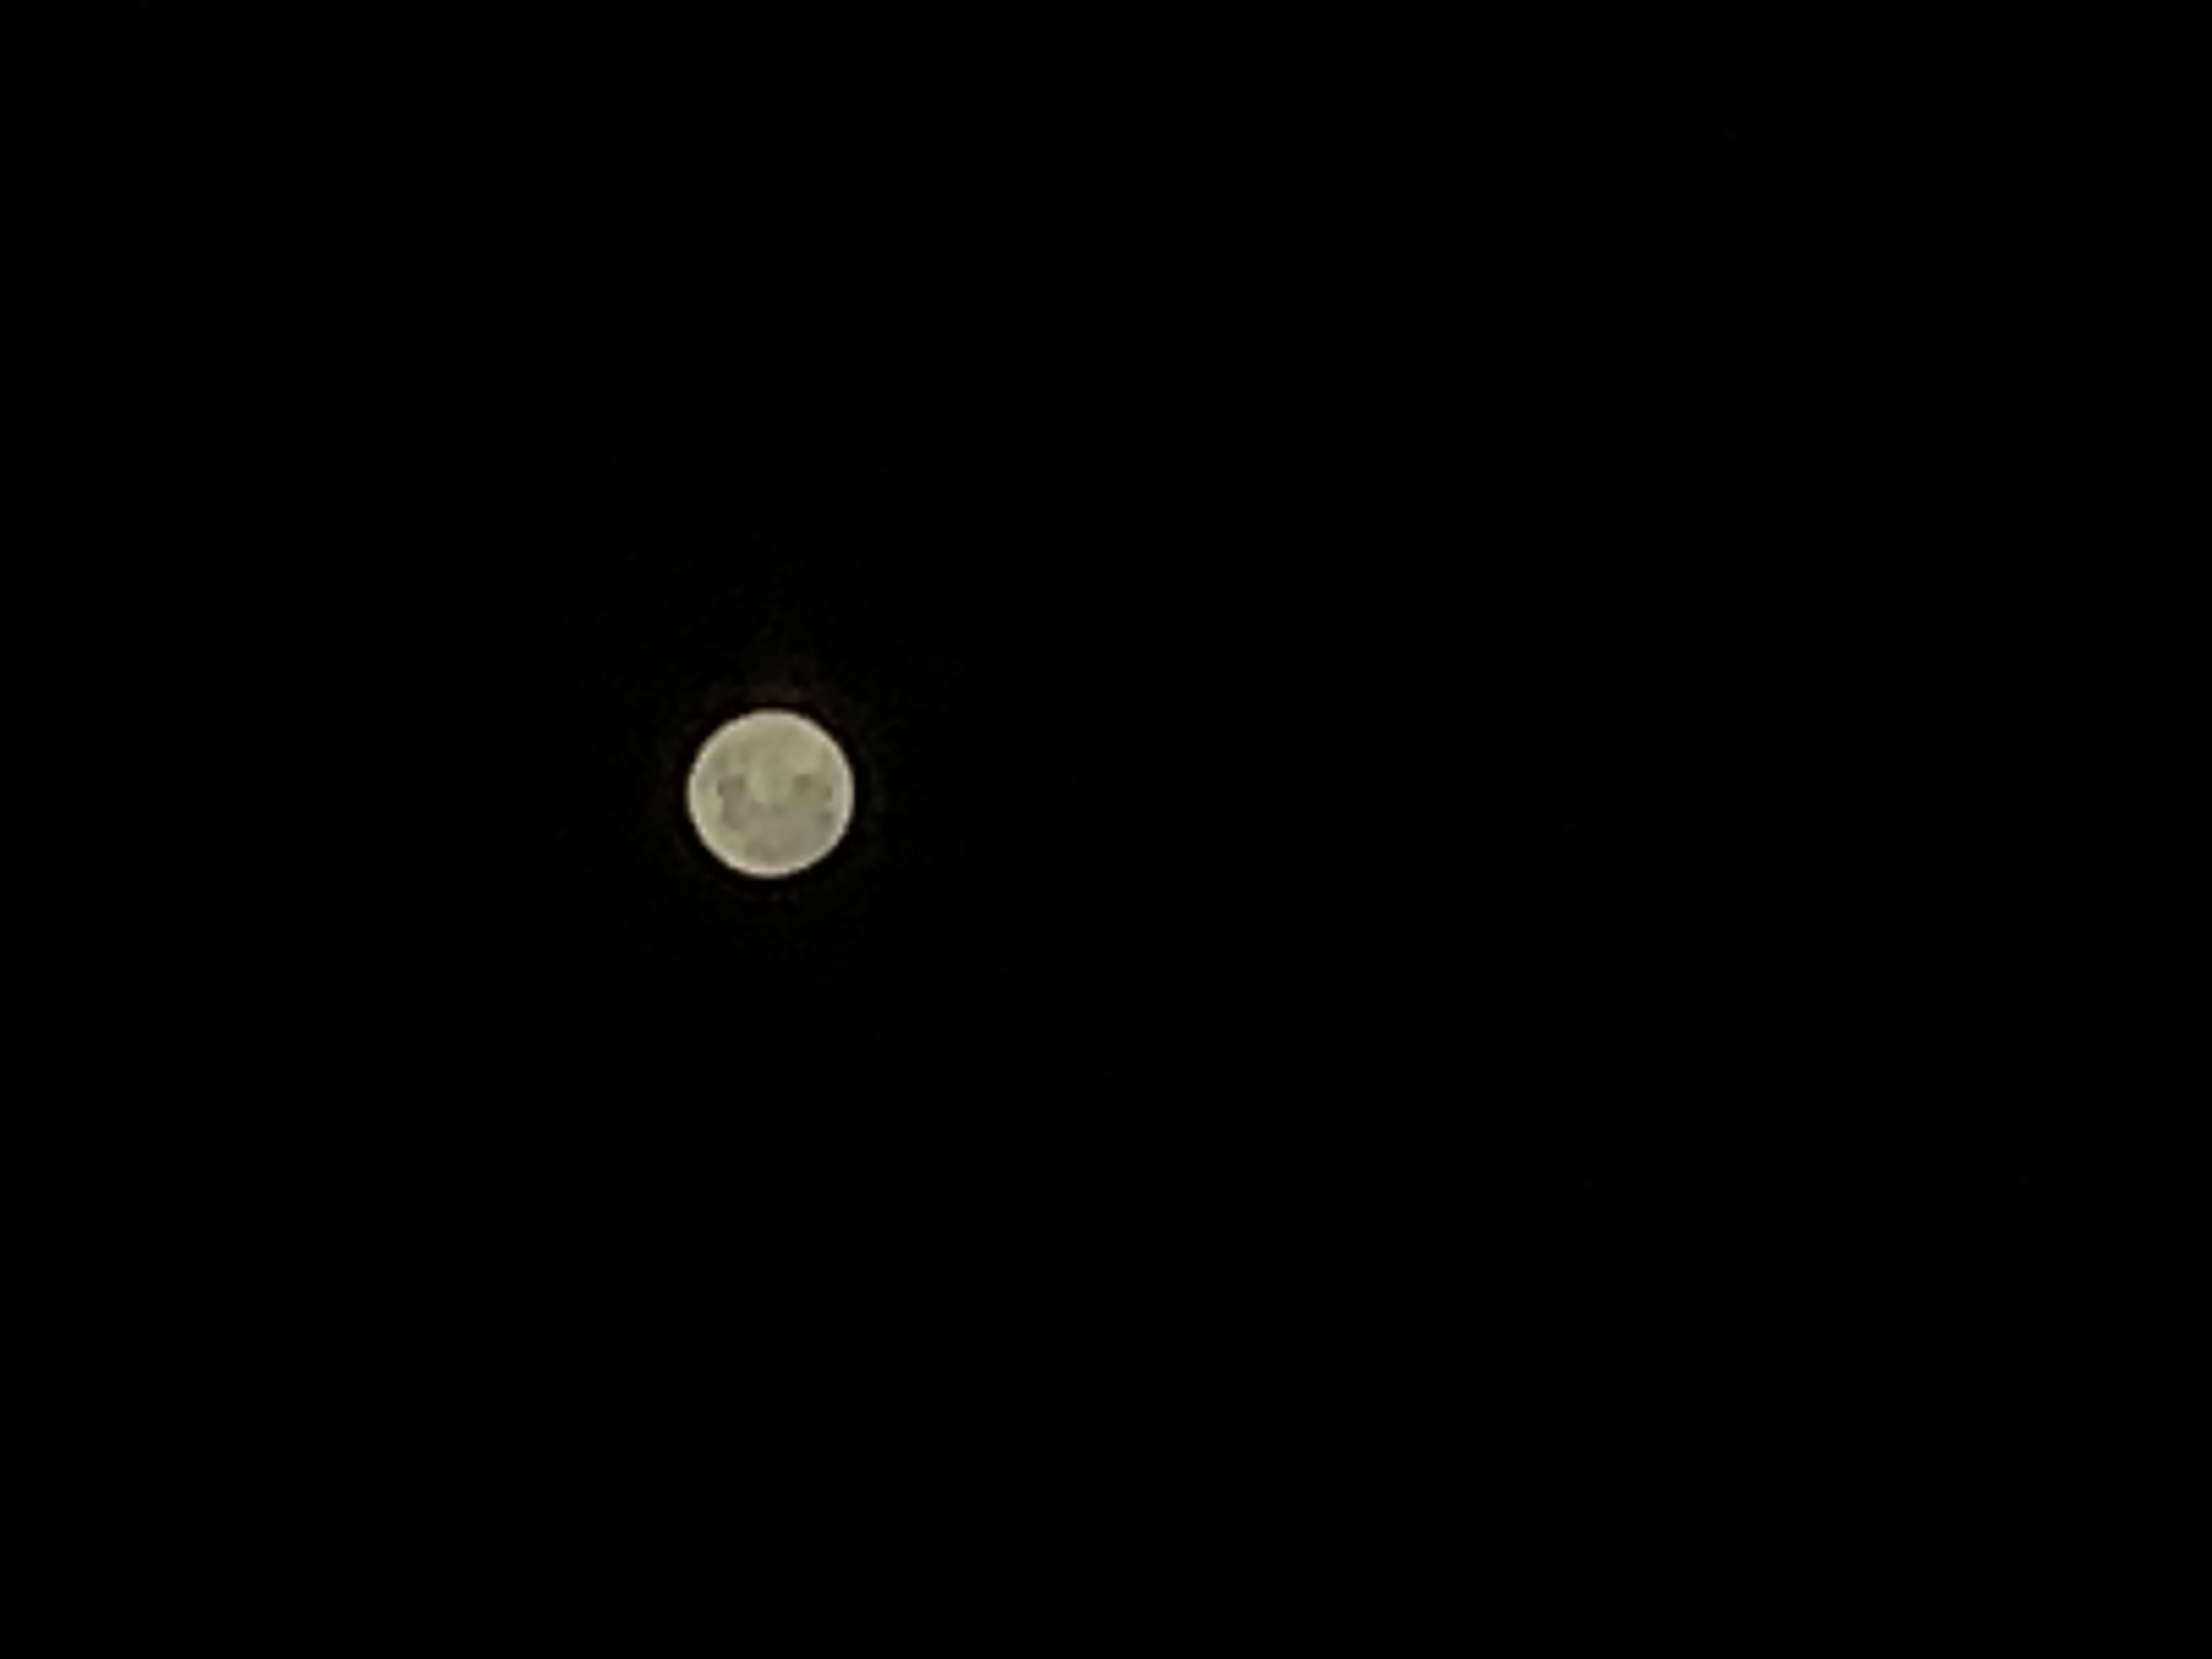 月の写真をスマホで撮影 月面の模様も撮れるiphoneアプリ Musecam できるネット